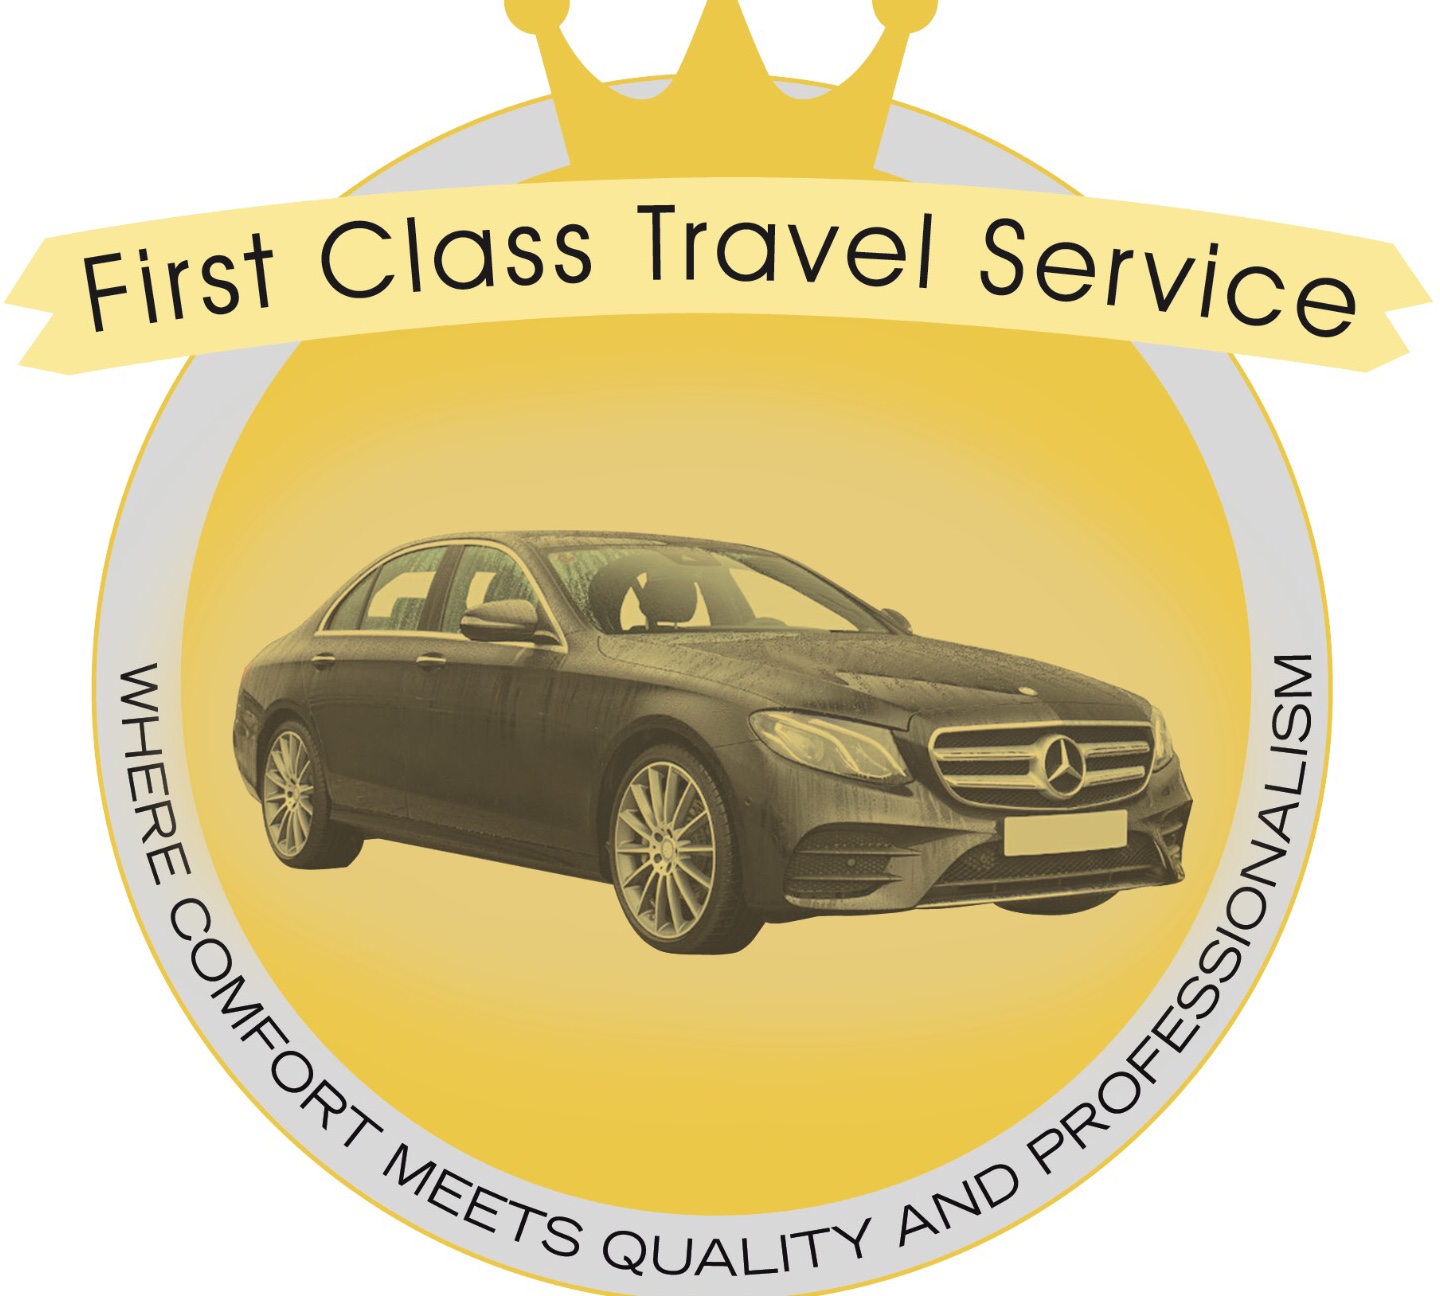 First Class Travel Service